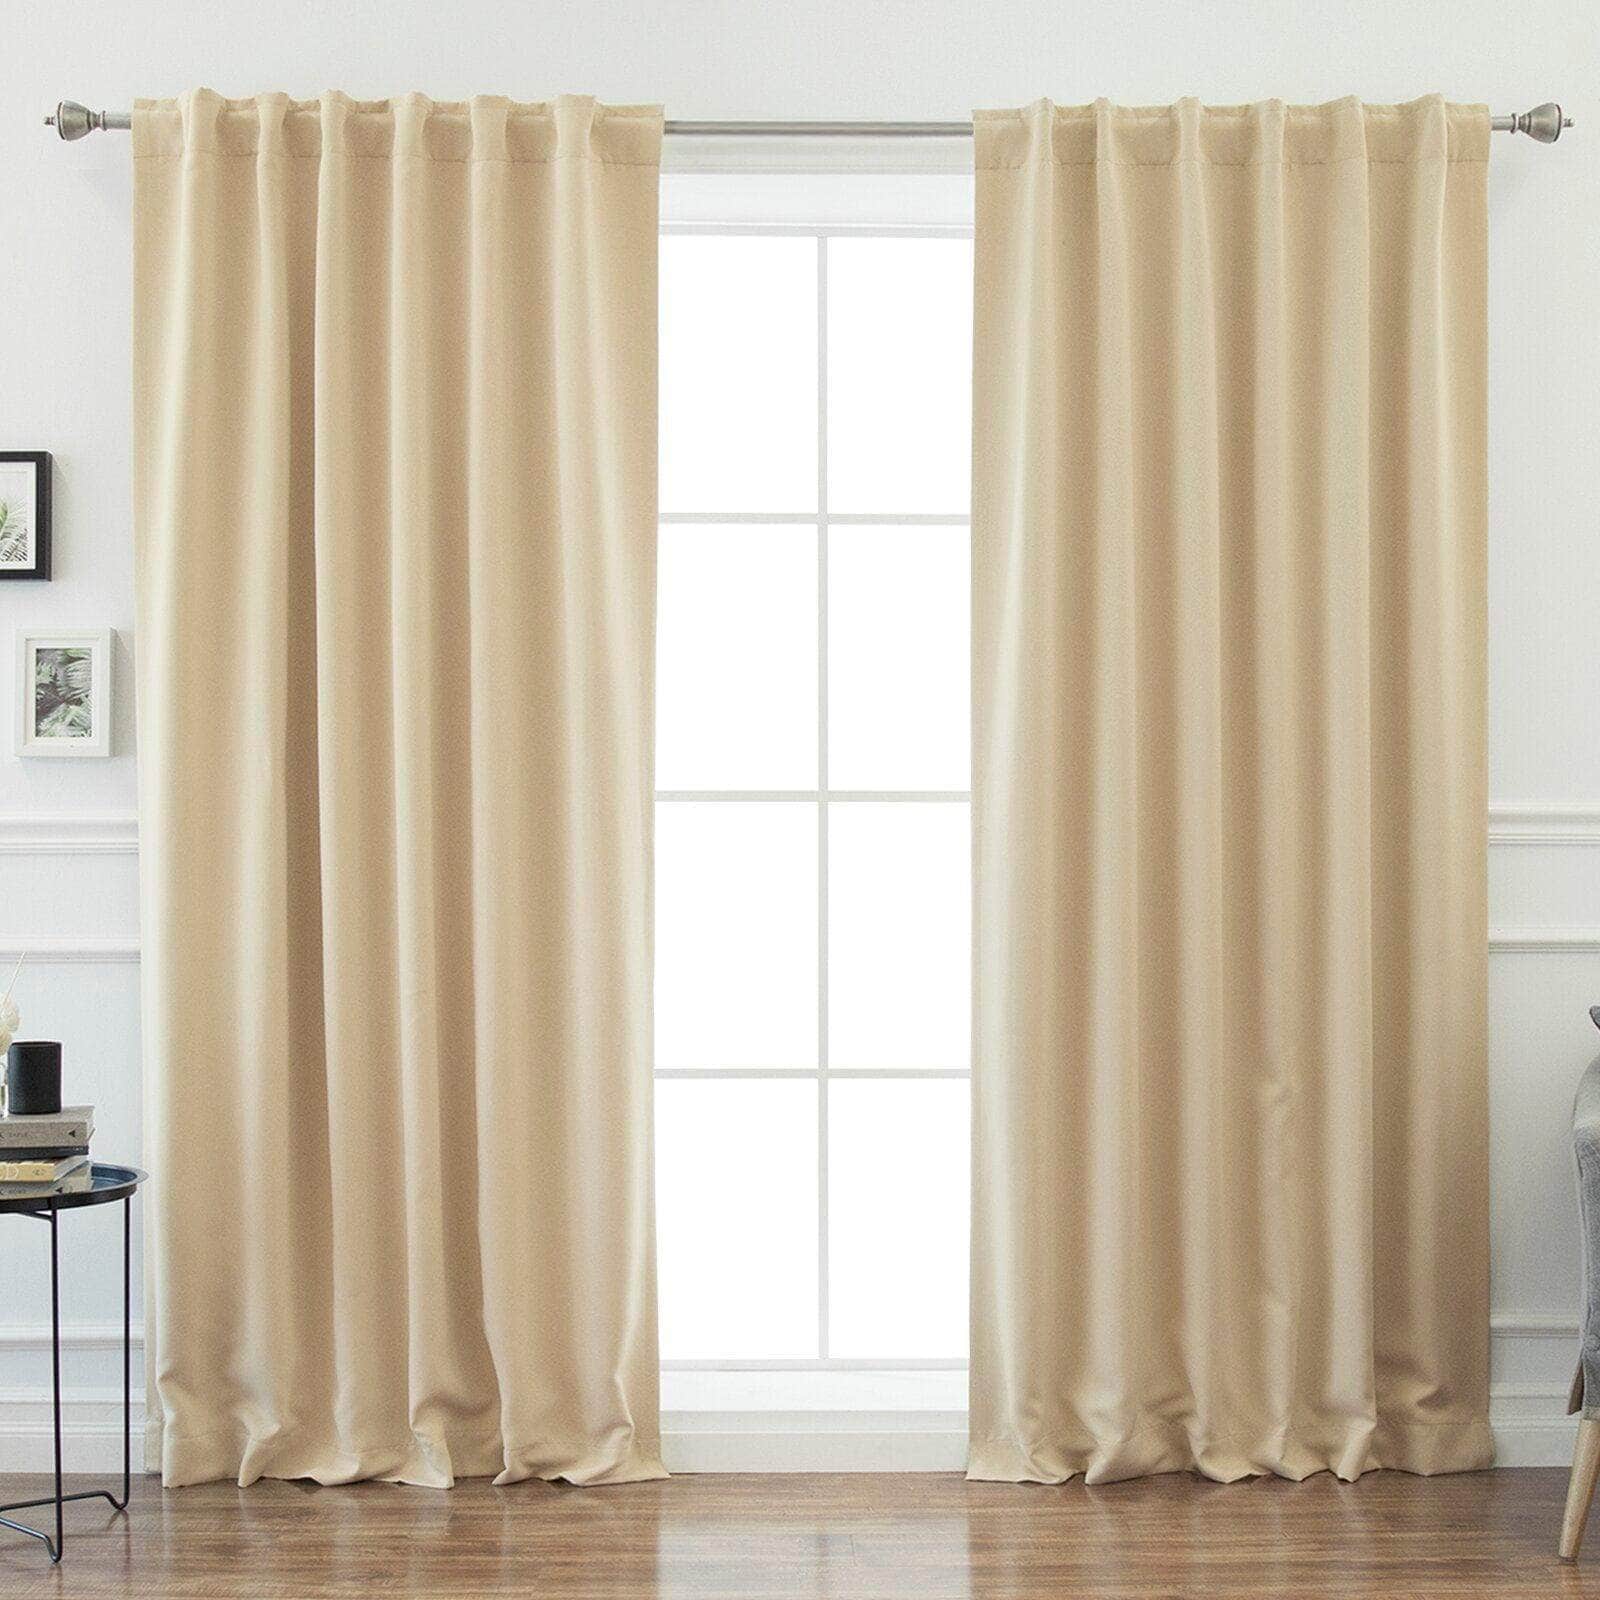 Penguin Group Curtains 250 H × 280 W (cm) Beige Velvet RikTig curtain